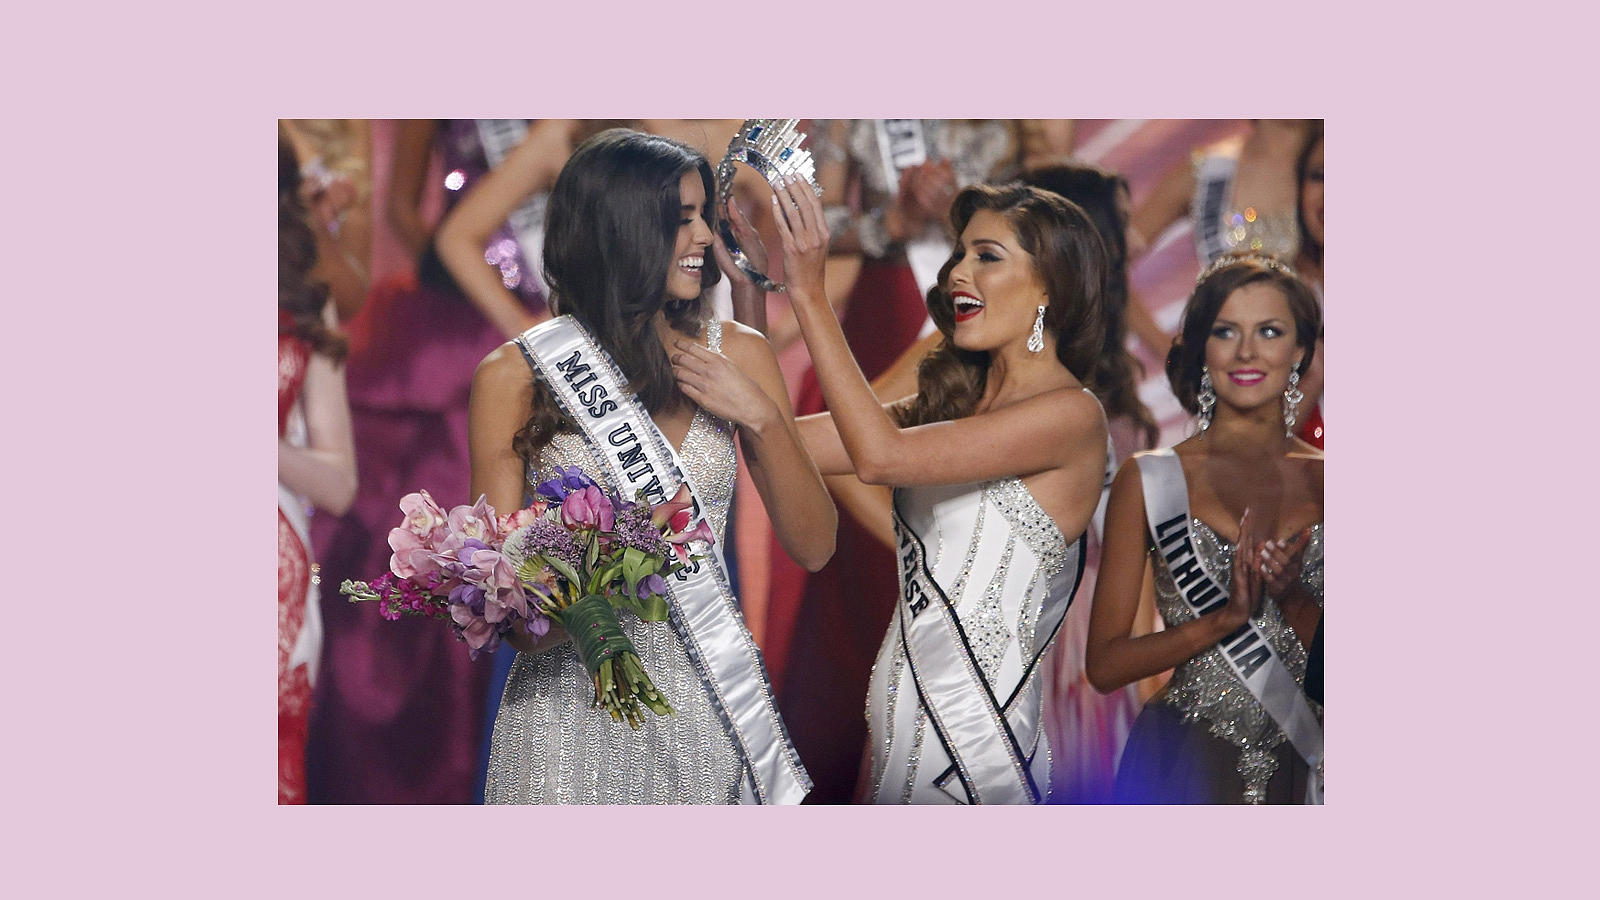 La venezolana Gabriela Isler, Miss Universo 2013, pone la corona a su sucesora